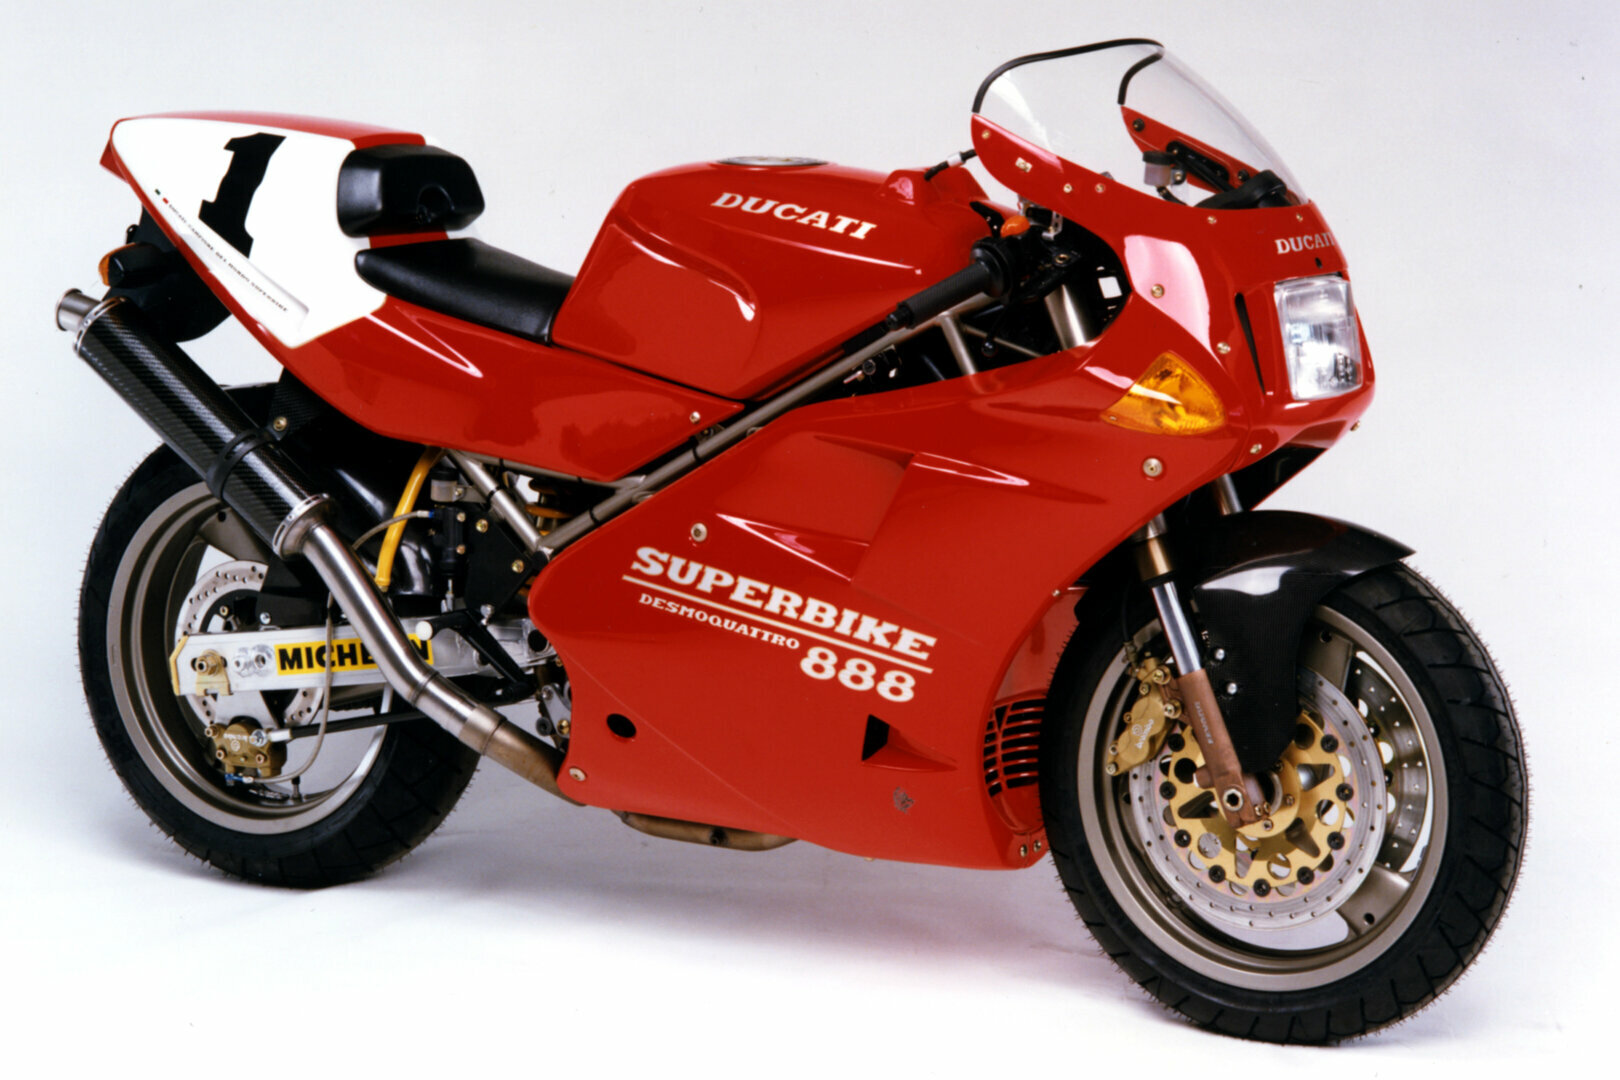 Moto del día: Ducati 888